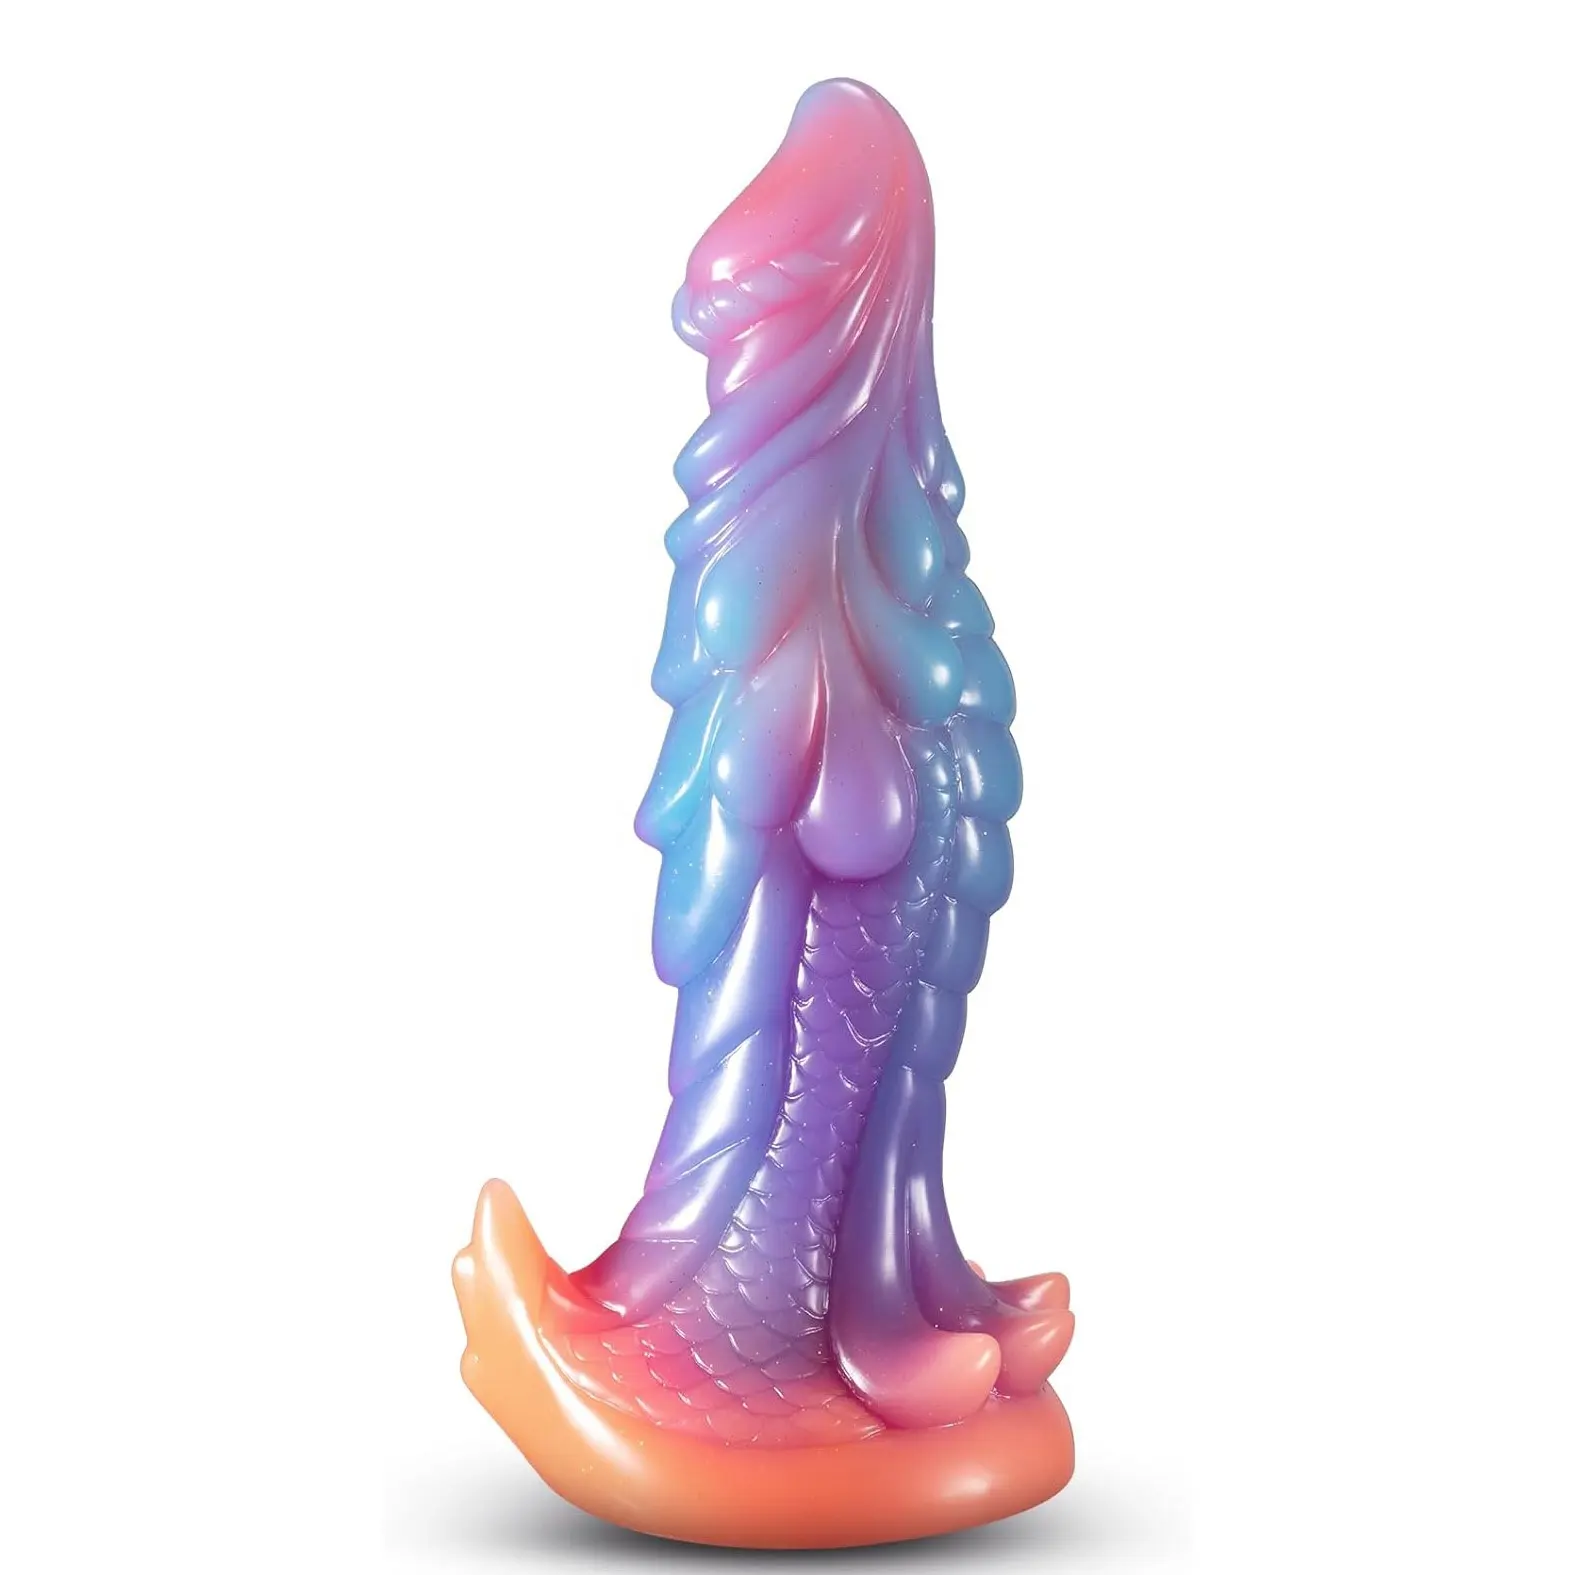 ZWFUN ejderha kadınlar için gerçekçi yapay penis 8.8 "büyük Anal yapay penis büyük canavar sıvı silikon Anal Plug yetişkin seks oyuncakları erkekler kadınlar için